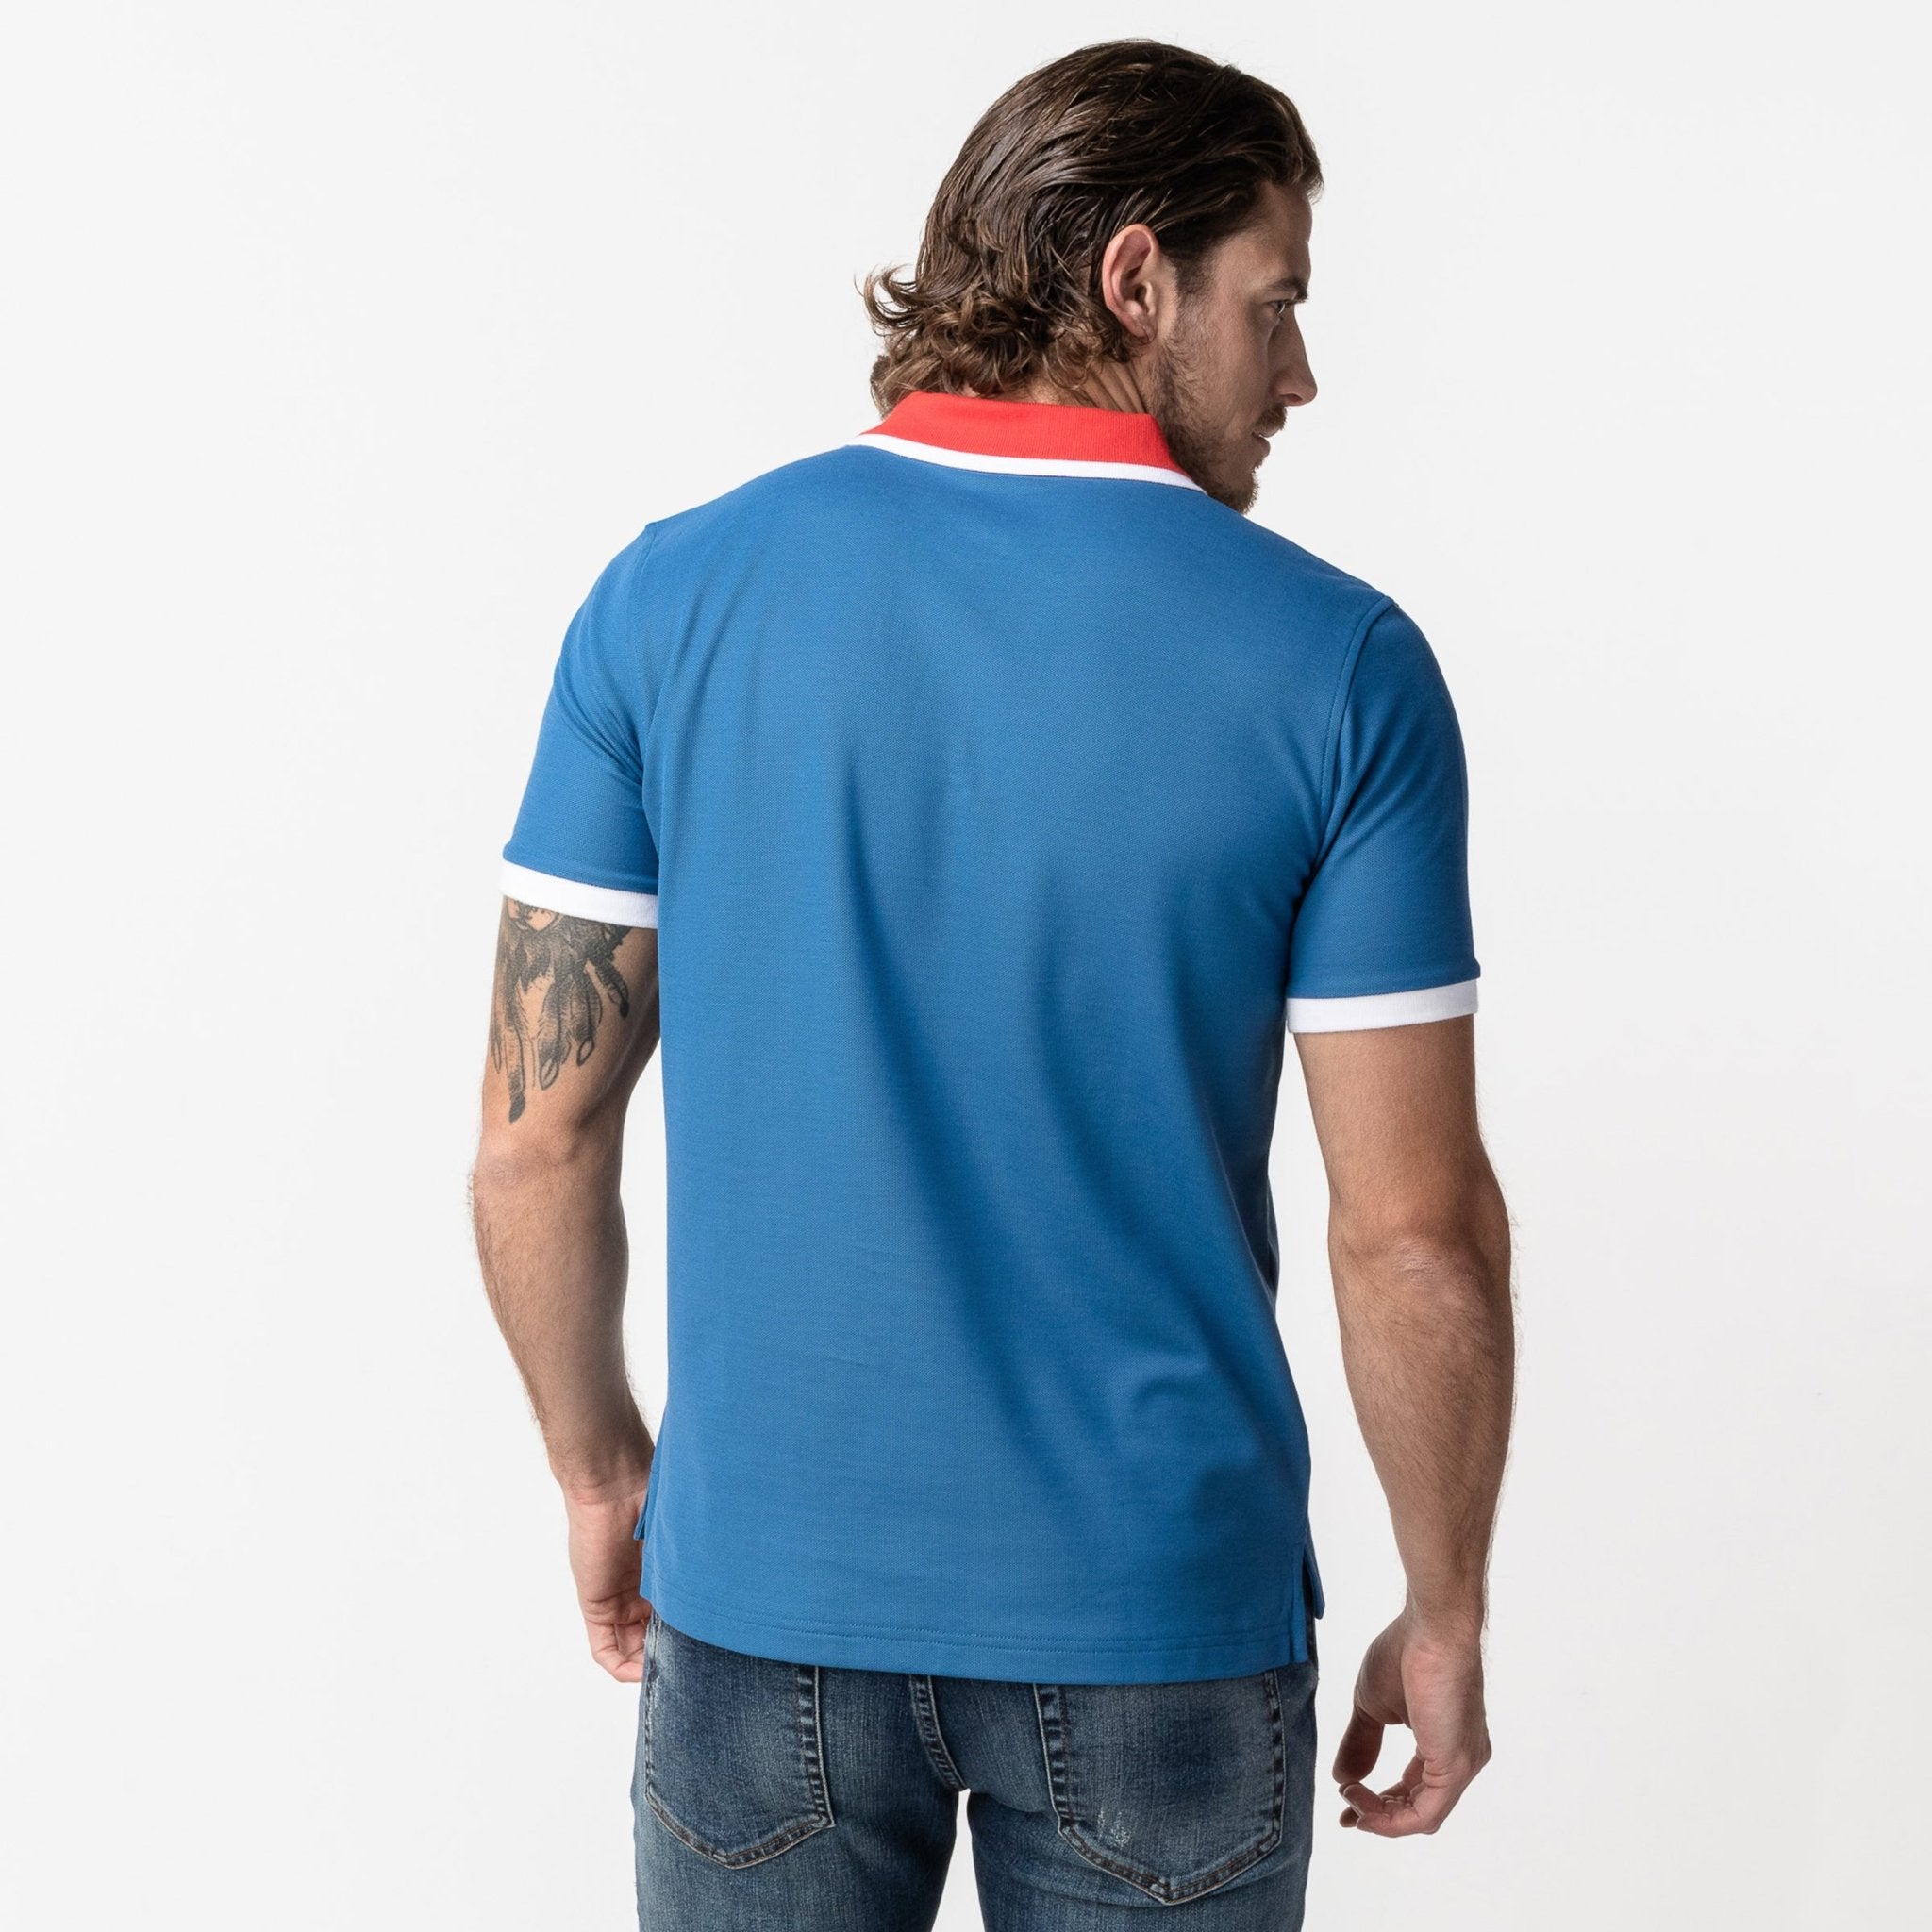 Men's Vallarta Contrast Neck Polo Shirt - JAMES BARK